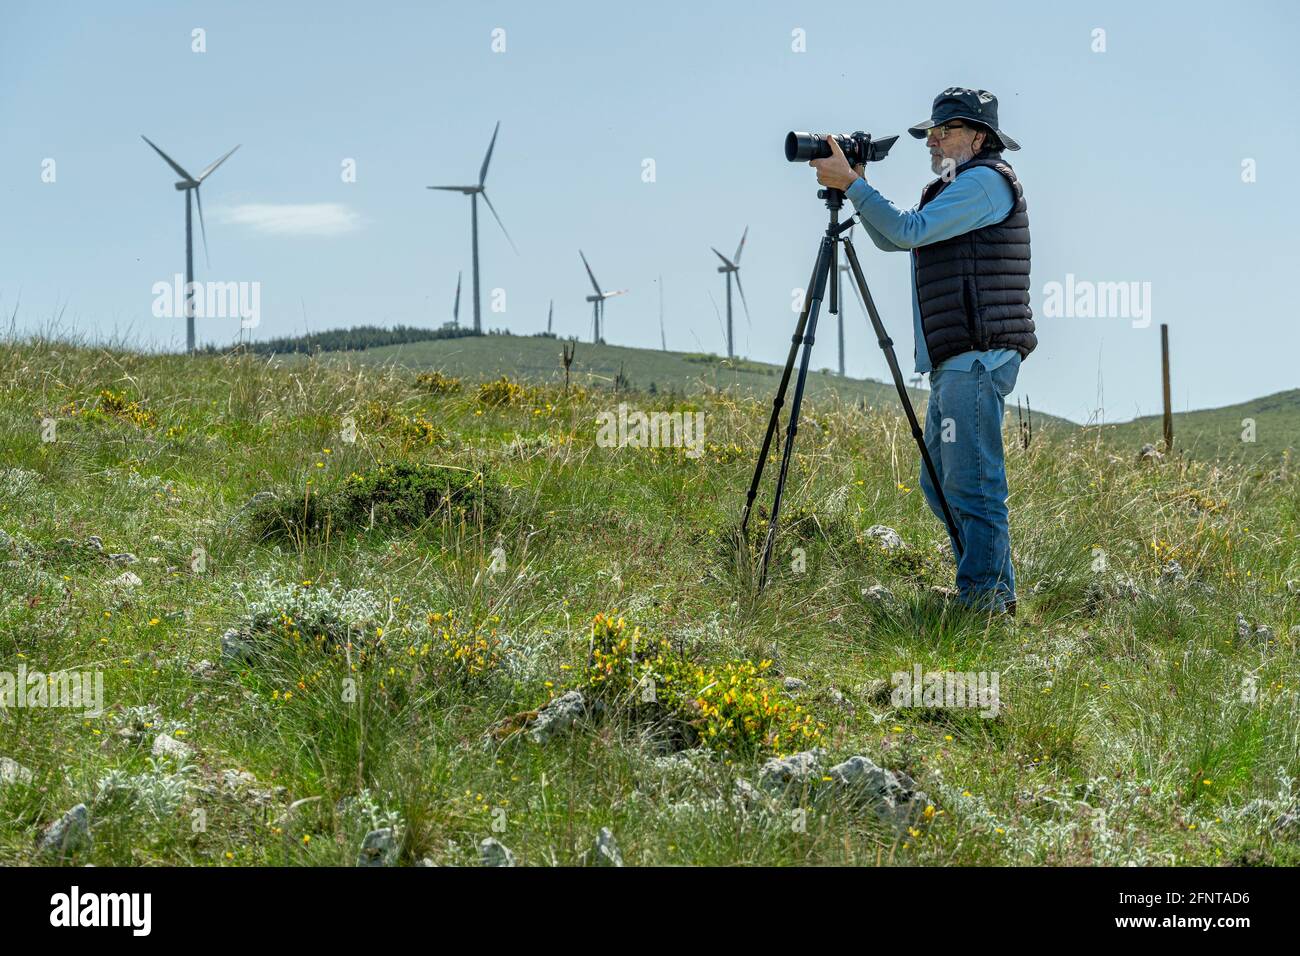 Älterer Mann mit neuer Technologie. Kamera auf Stativ, lässig gekleideter Mann. Windturbinen im Hintergrund. Abruzzen, Italien, Europa Stockfoto